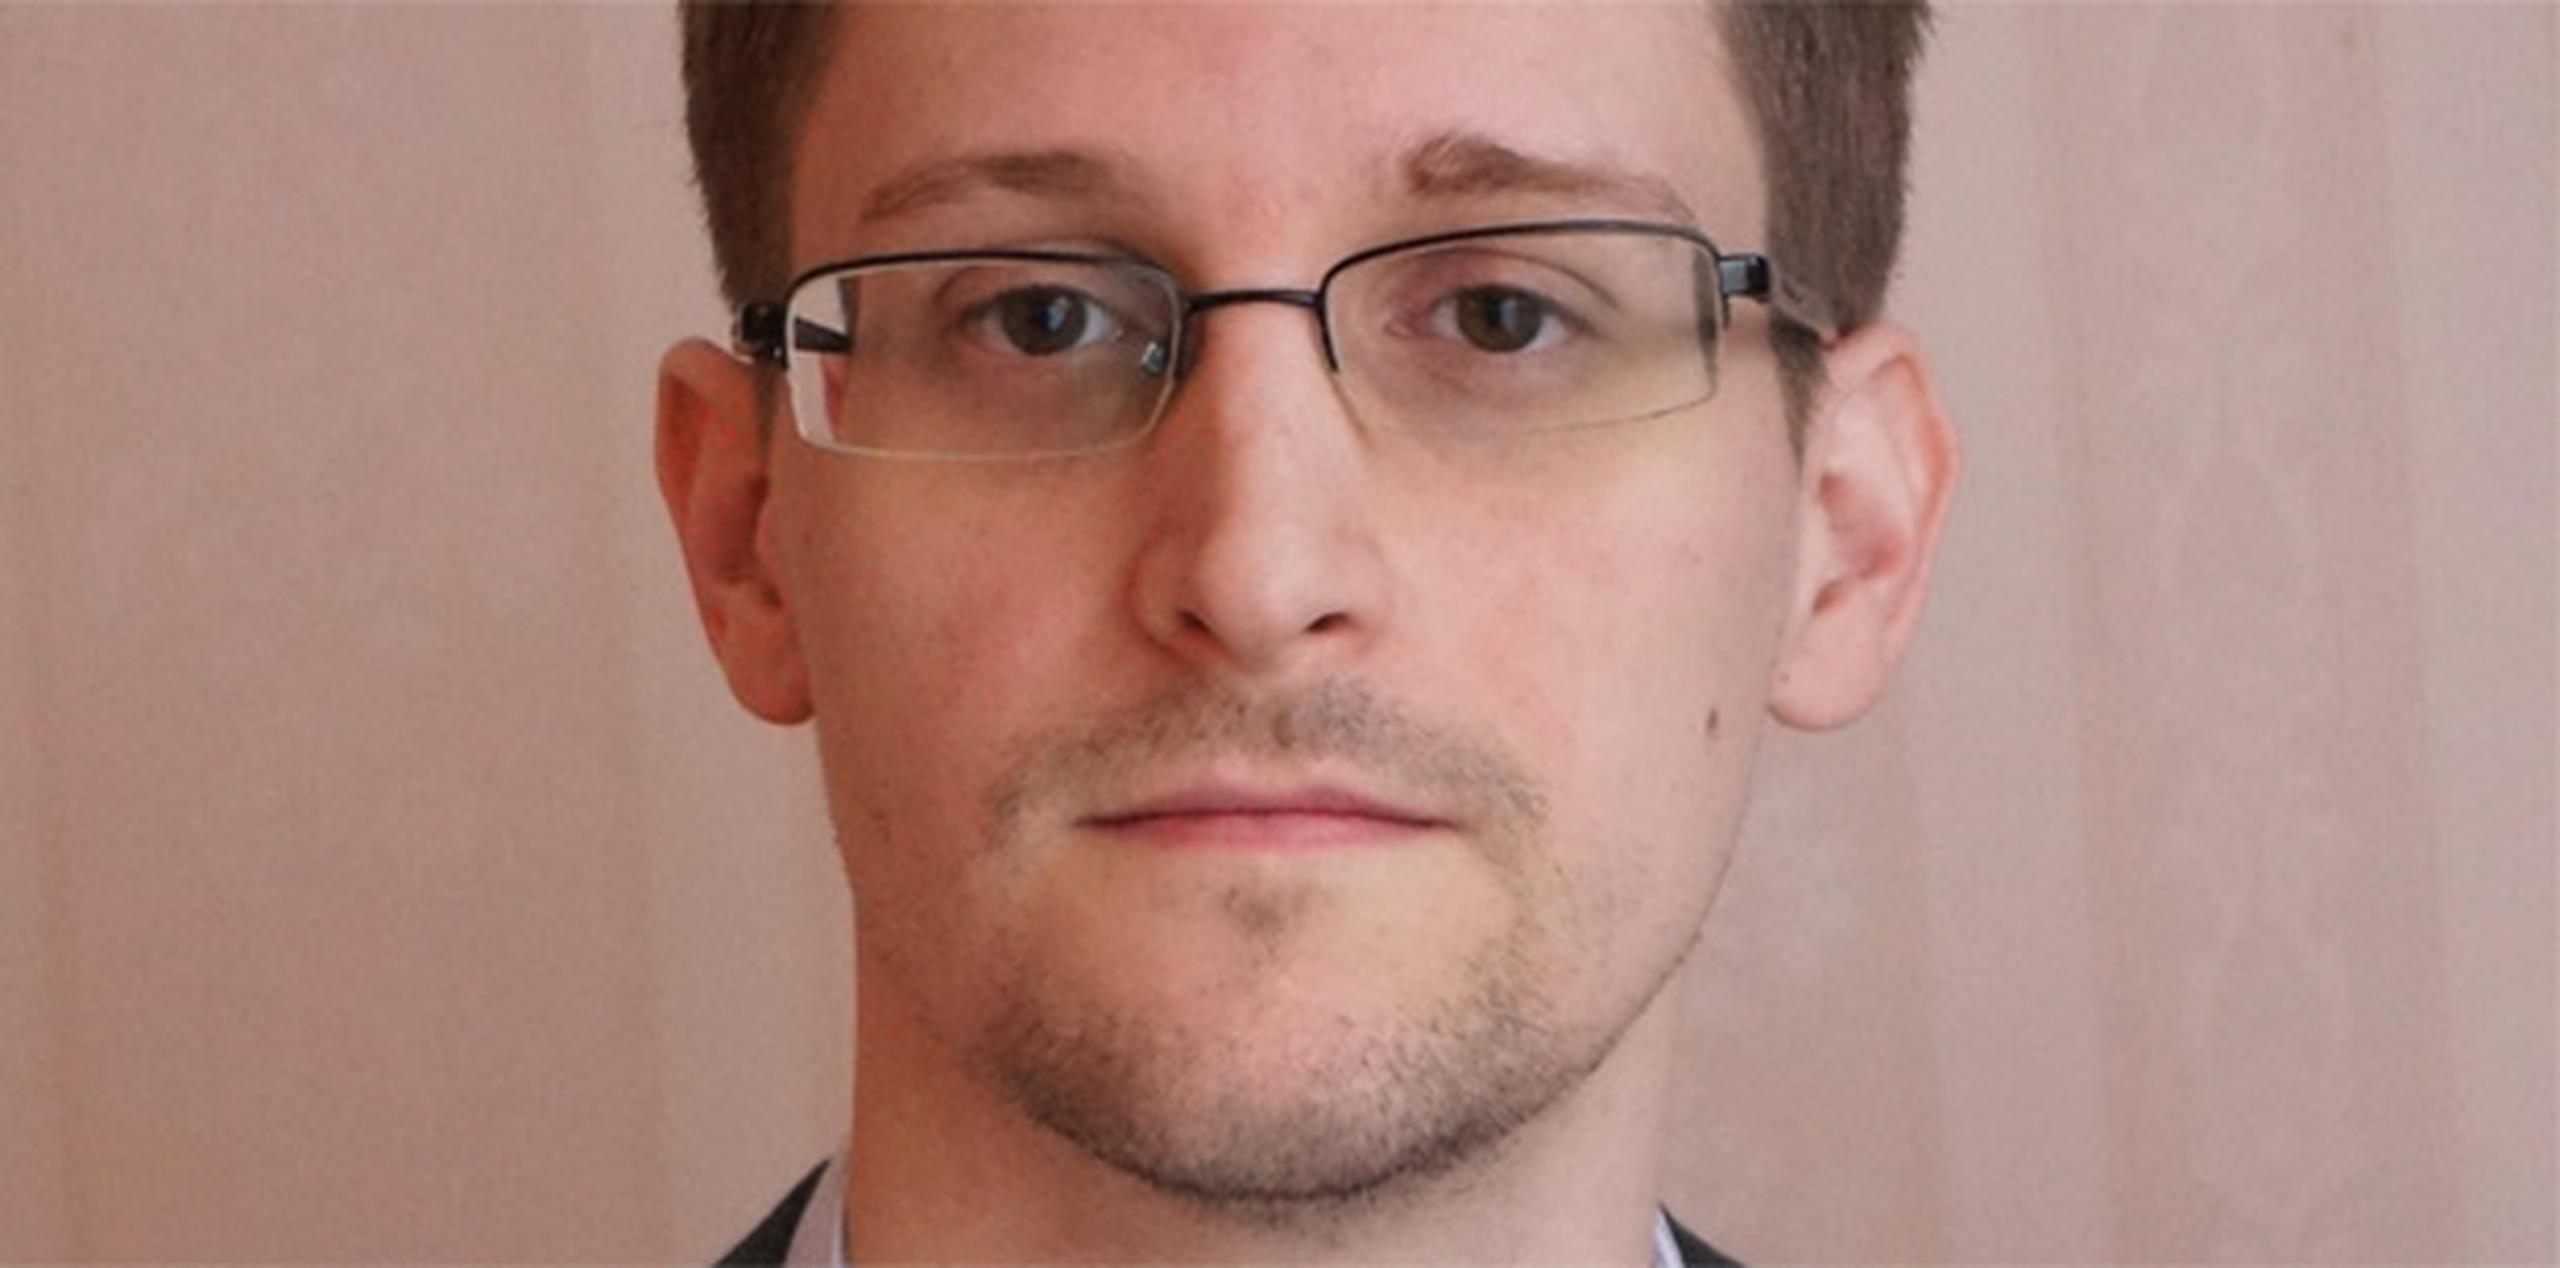 En el 2013, Edward Snowden divulgó 1.7 millones de archivos sobre el espionaje a nivel global de la Agencia de Seguridad Nacional. (Archivo)